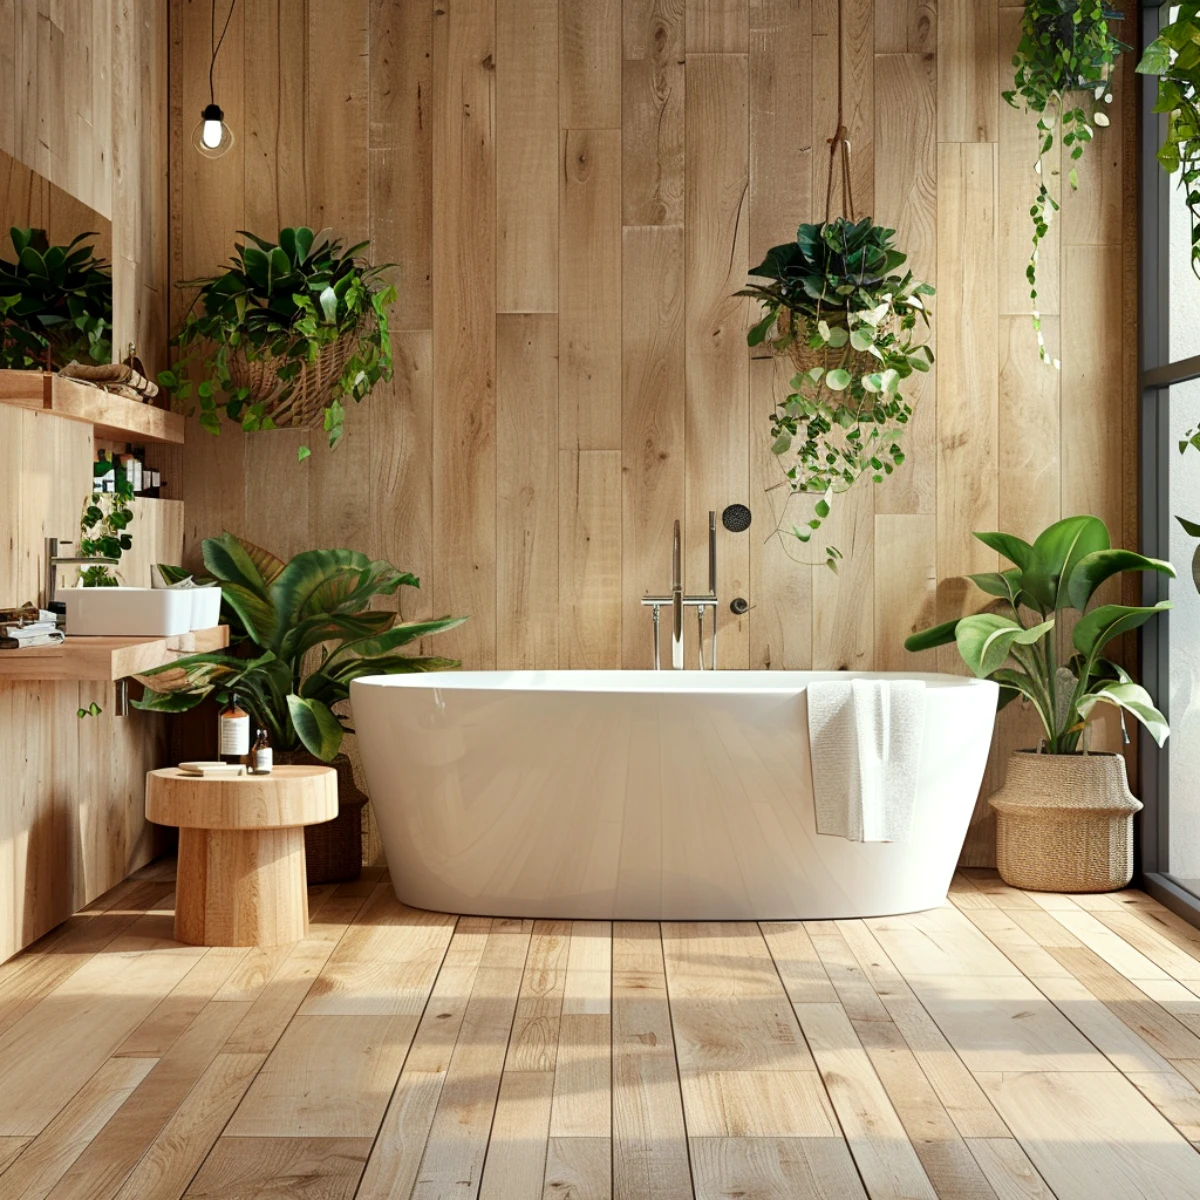 salle de bains feng shui idee bagnoire balnche bois plantes vertes